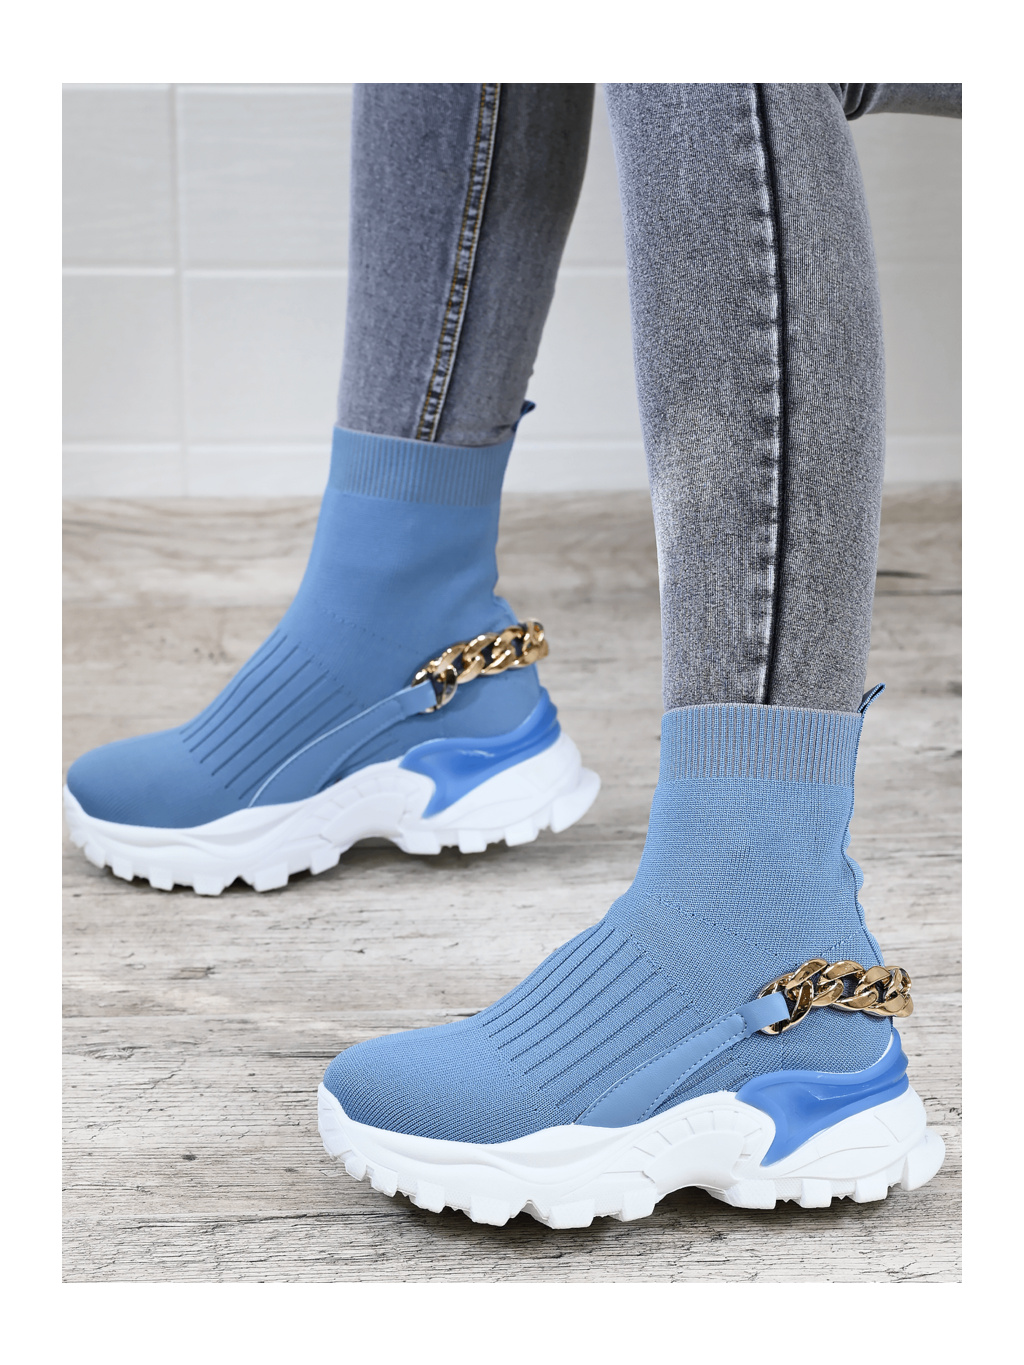 Dámske štýlové modré topánky s retiazkou SL-0225M